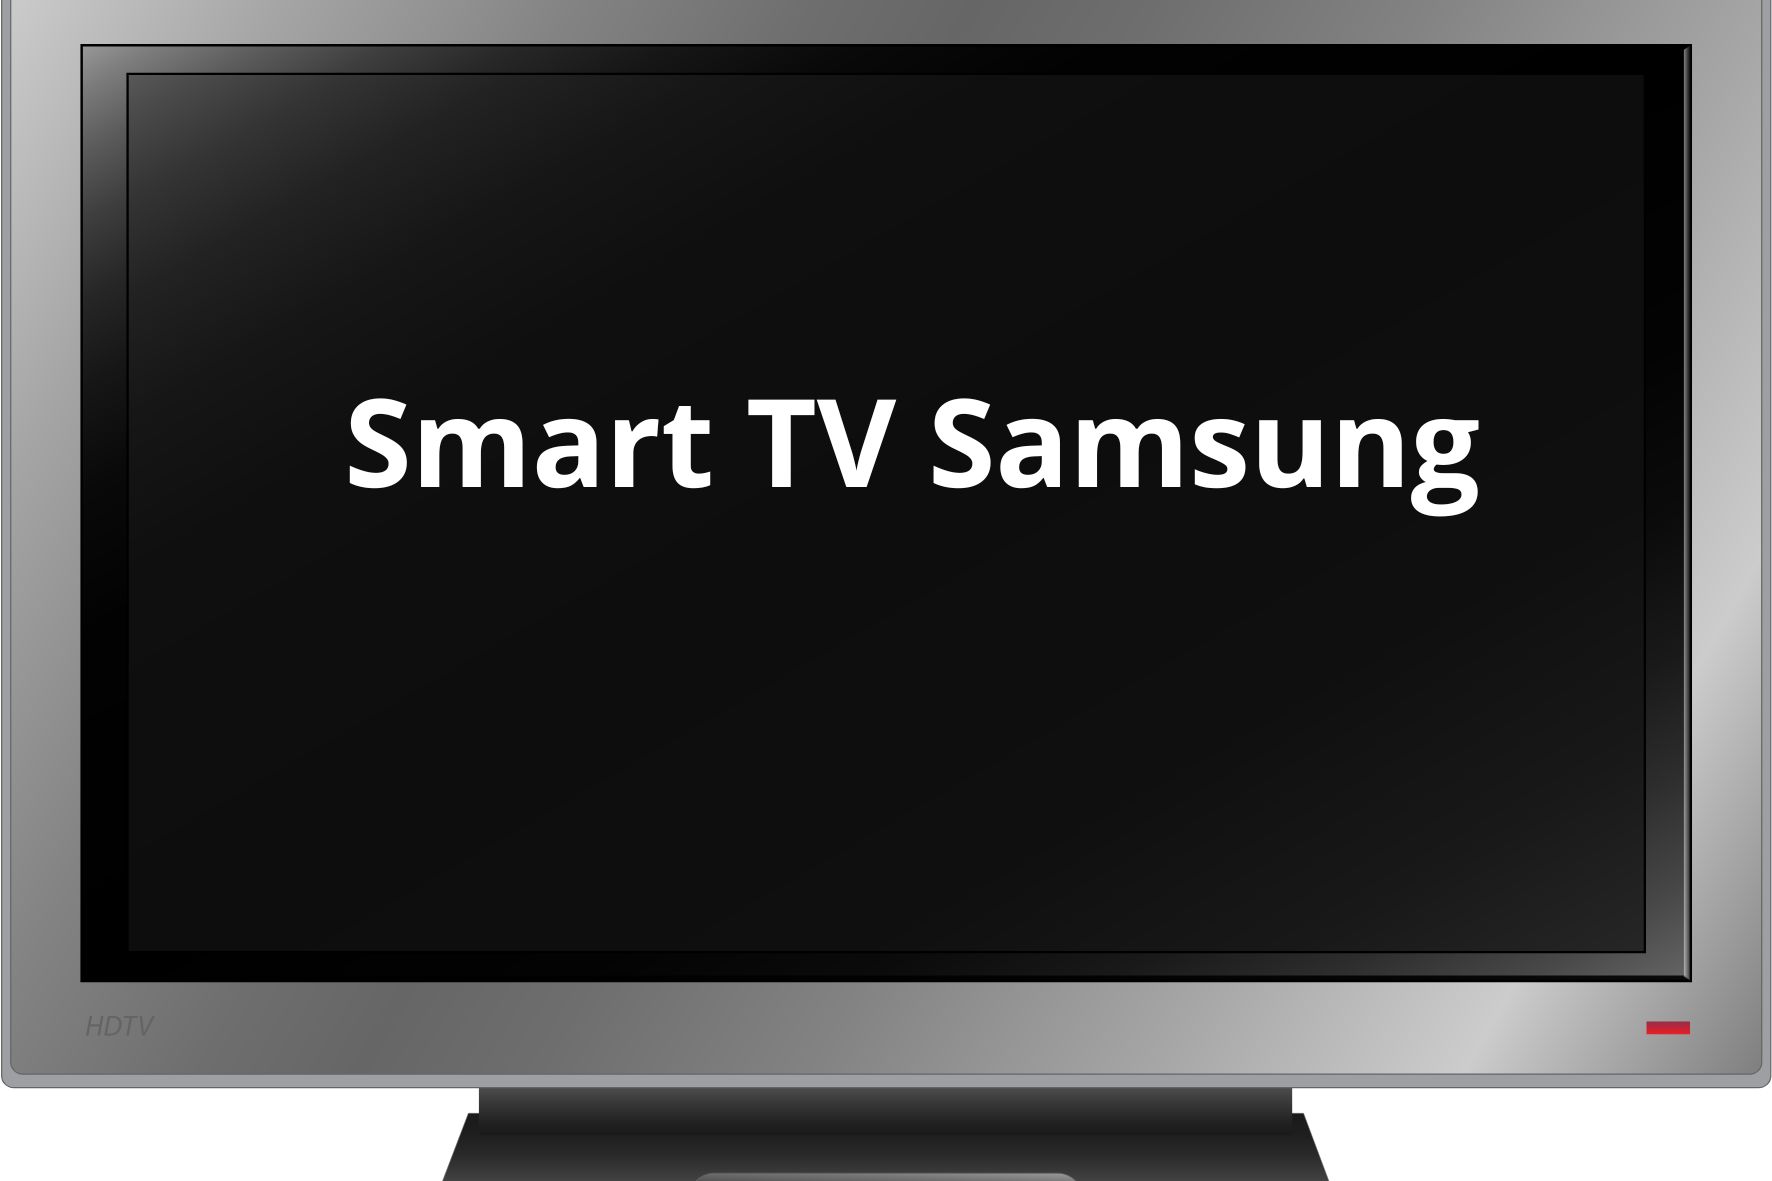 Harga Smart TV Samsung Ukuran Mulai 24 Inch, Lengkap dengan Spesifikasinya